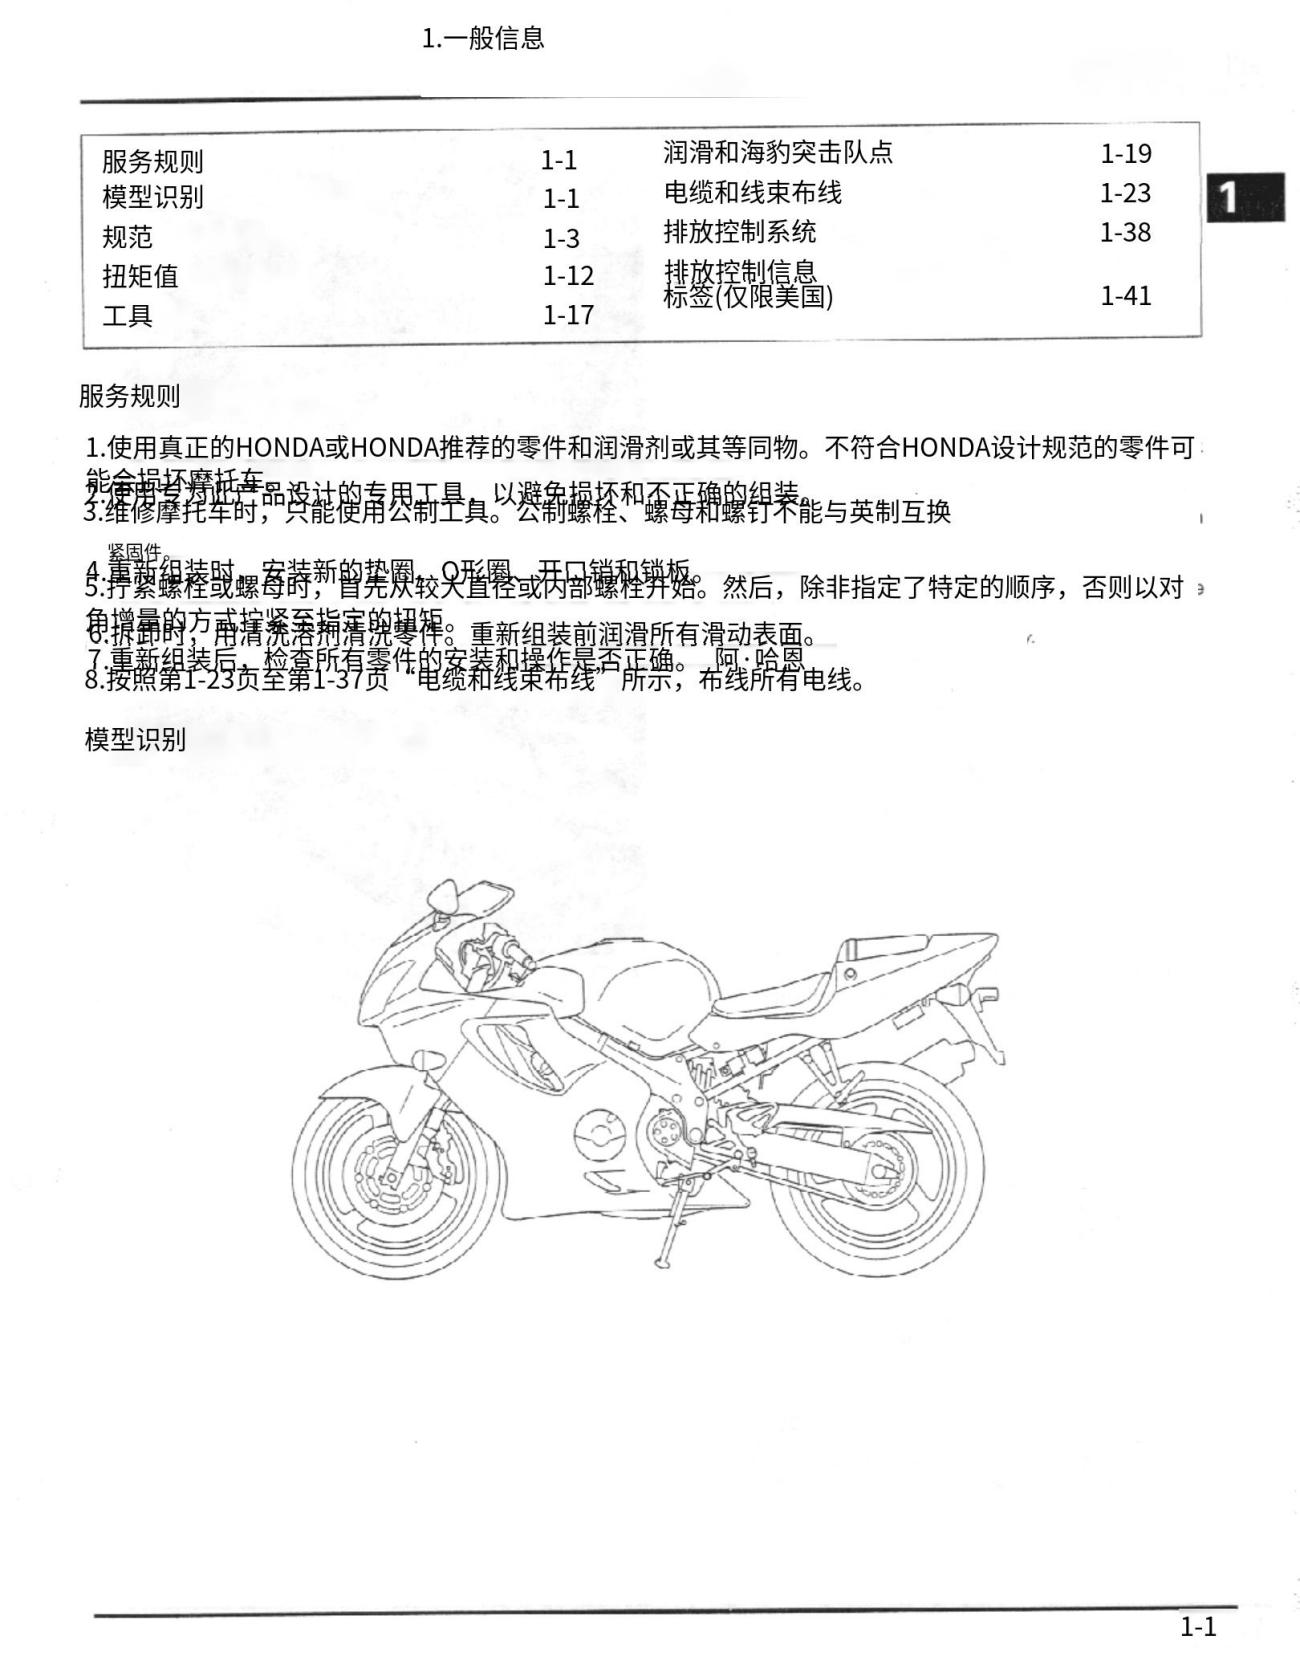 简体中文2001-2003本田CBR600F4i维修手册插图1